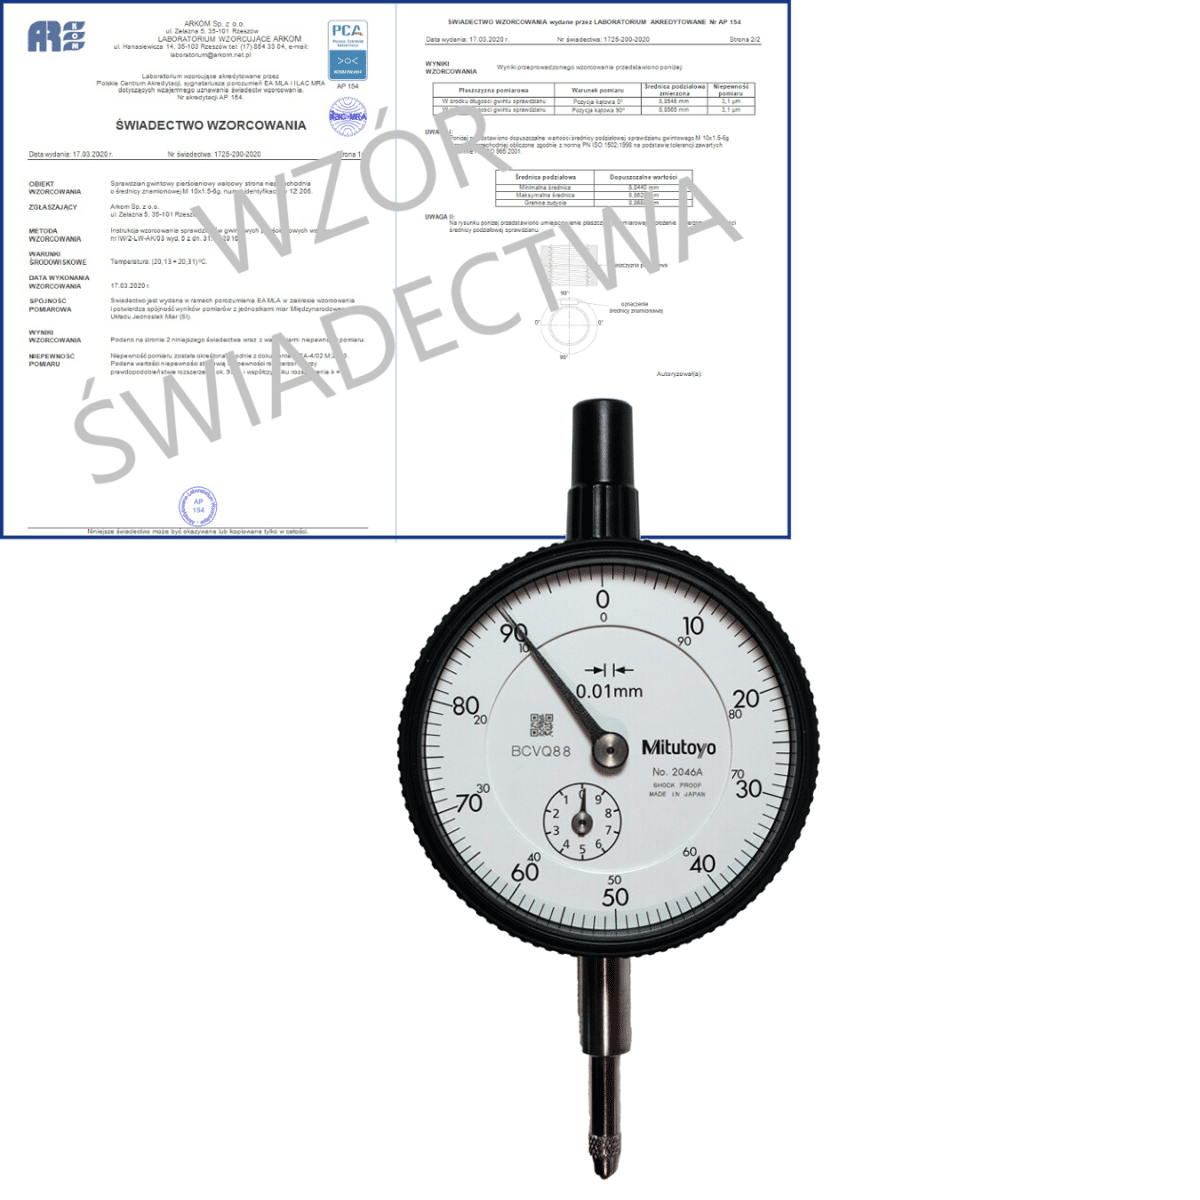 MITUTOYO czujnik zegarowy 0.01-10/0.01 mm + świadectwo wzorcowania PCA 2046A-WZORC